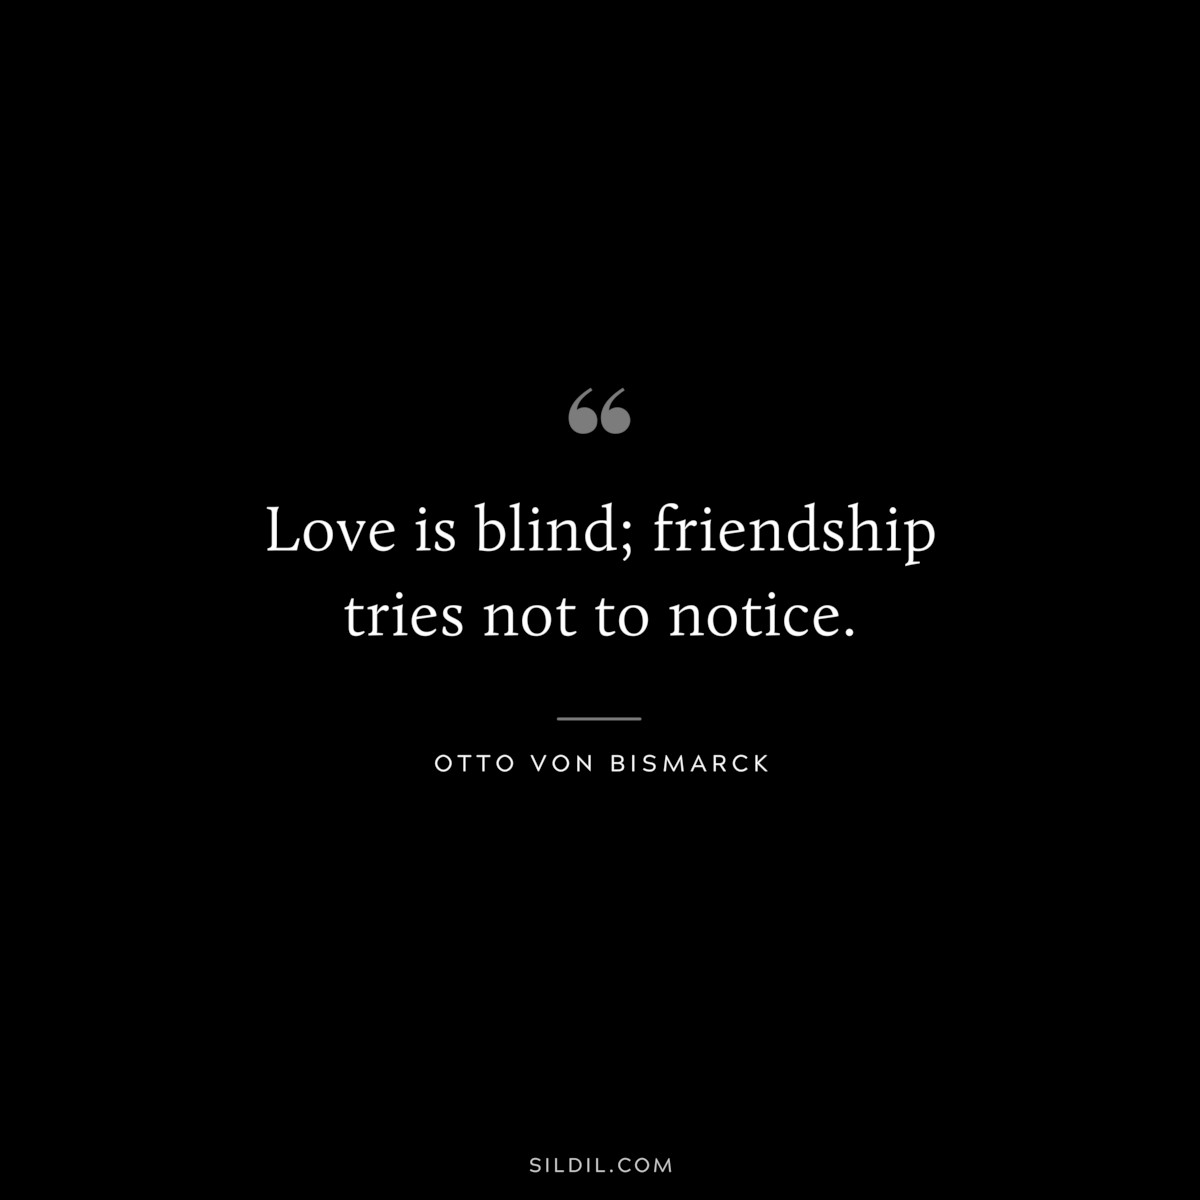 Love is blind; friendship tries not to notice. ― Otto von Bismarck